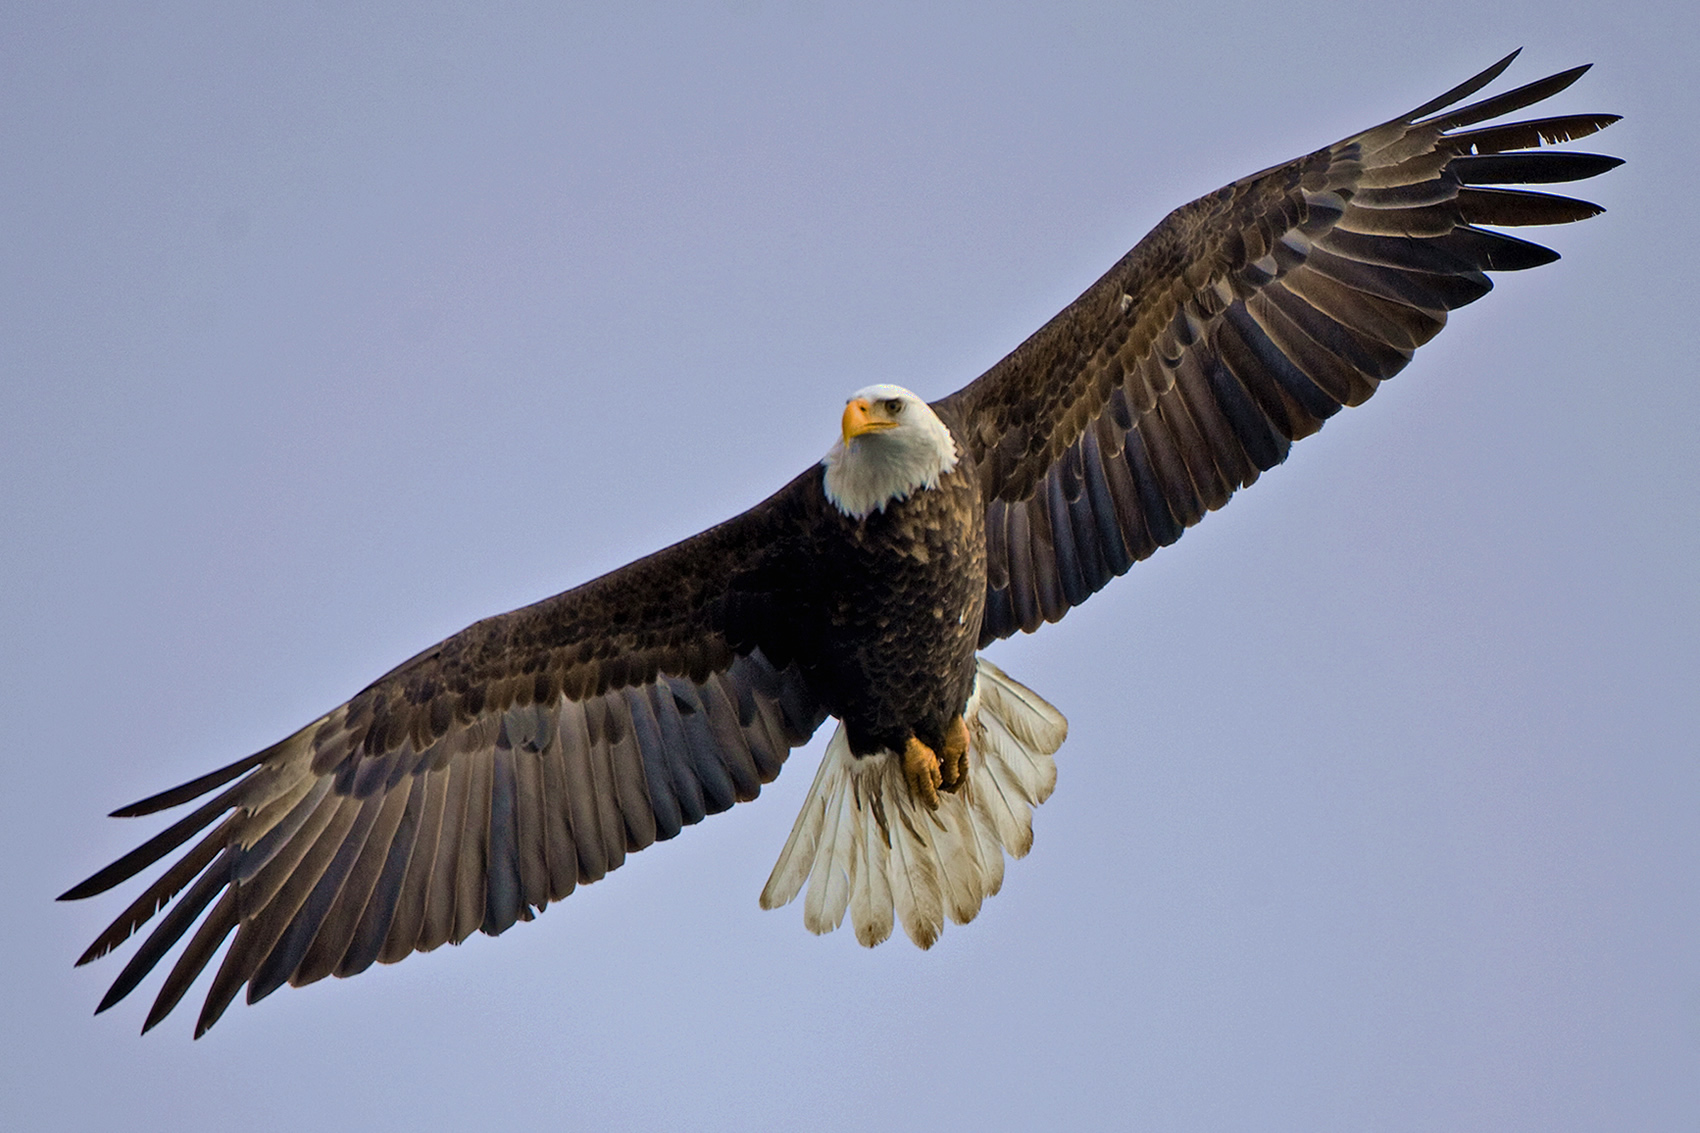 Squamish Eagle Watching - Squamish Accommodations :: August Jack ...